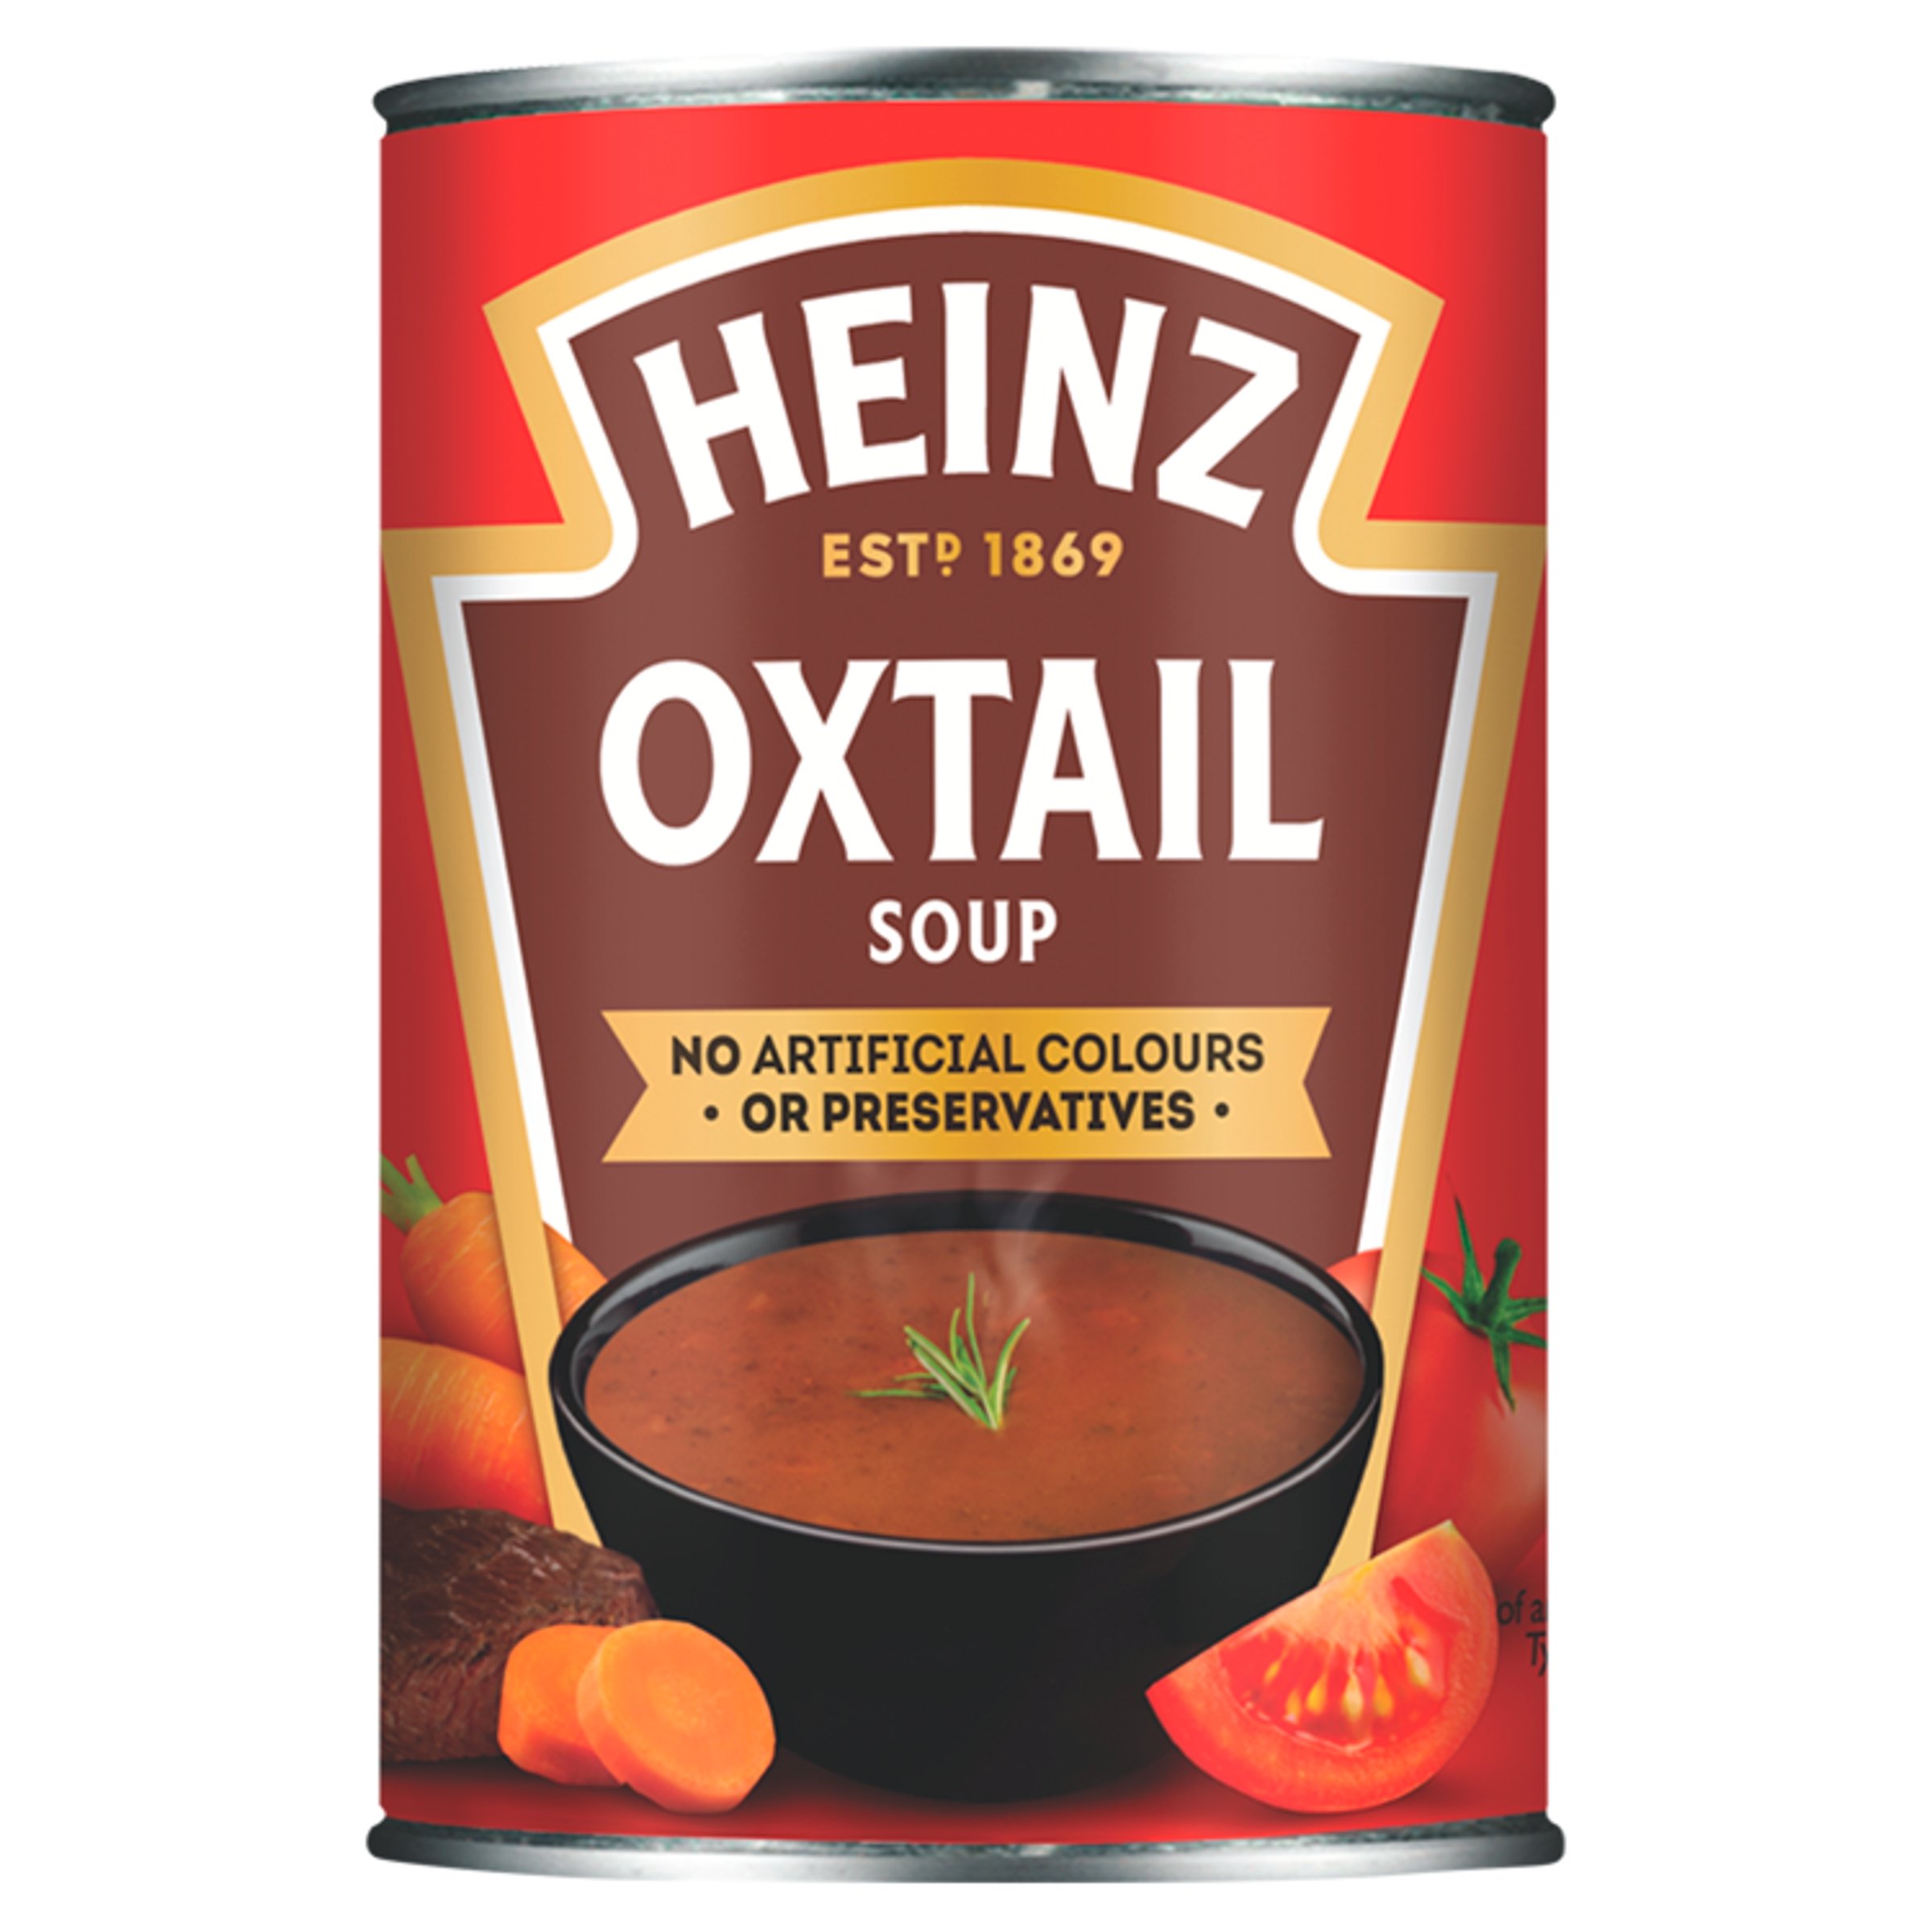 Heinz oxtail soup – soupe de queue de boeuf – 400g